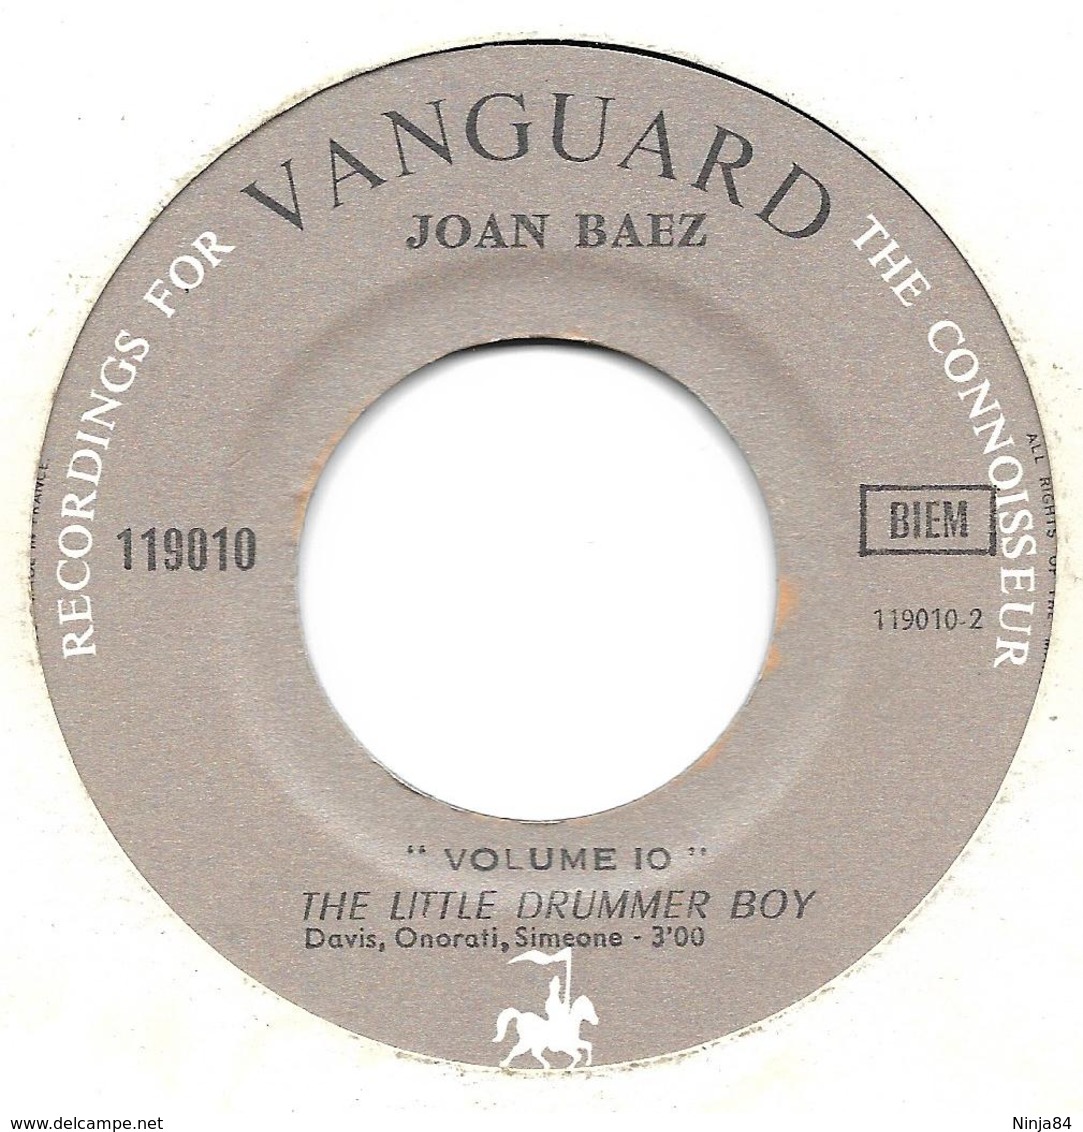 SP 45 RPM (7")   Joan Baez  "  Ave Maria De Schubert   " - Autres - Musique Anglaise